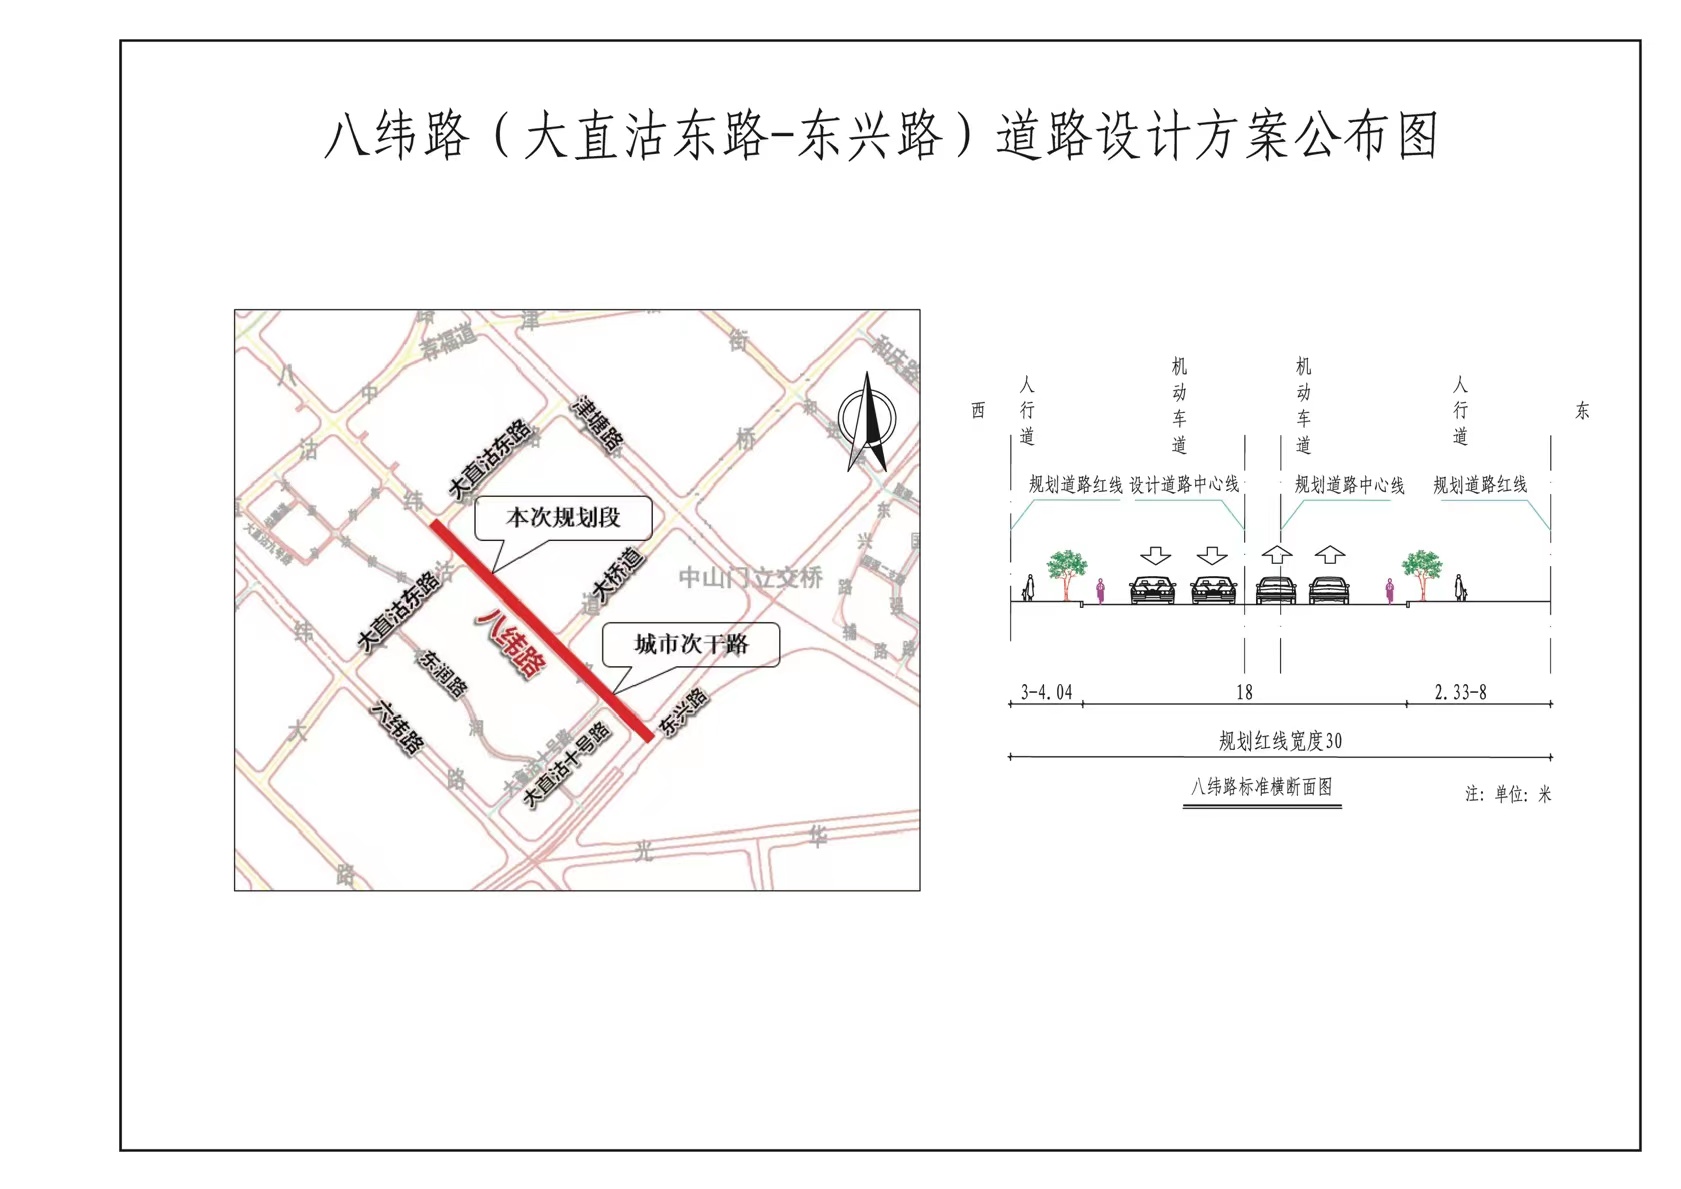 道路工程项目建设工程设计方案平面布置图的公布_规划公布_天津市规划